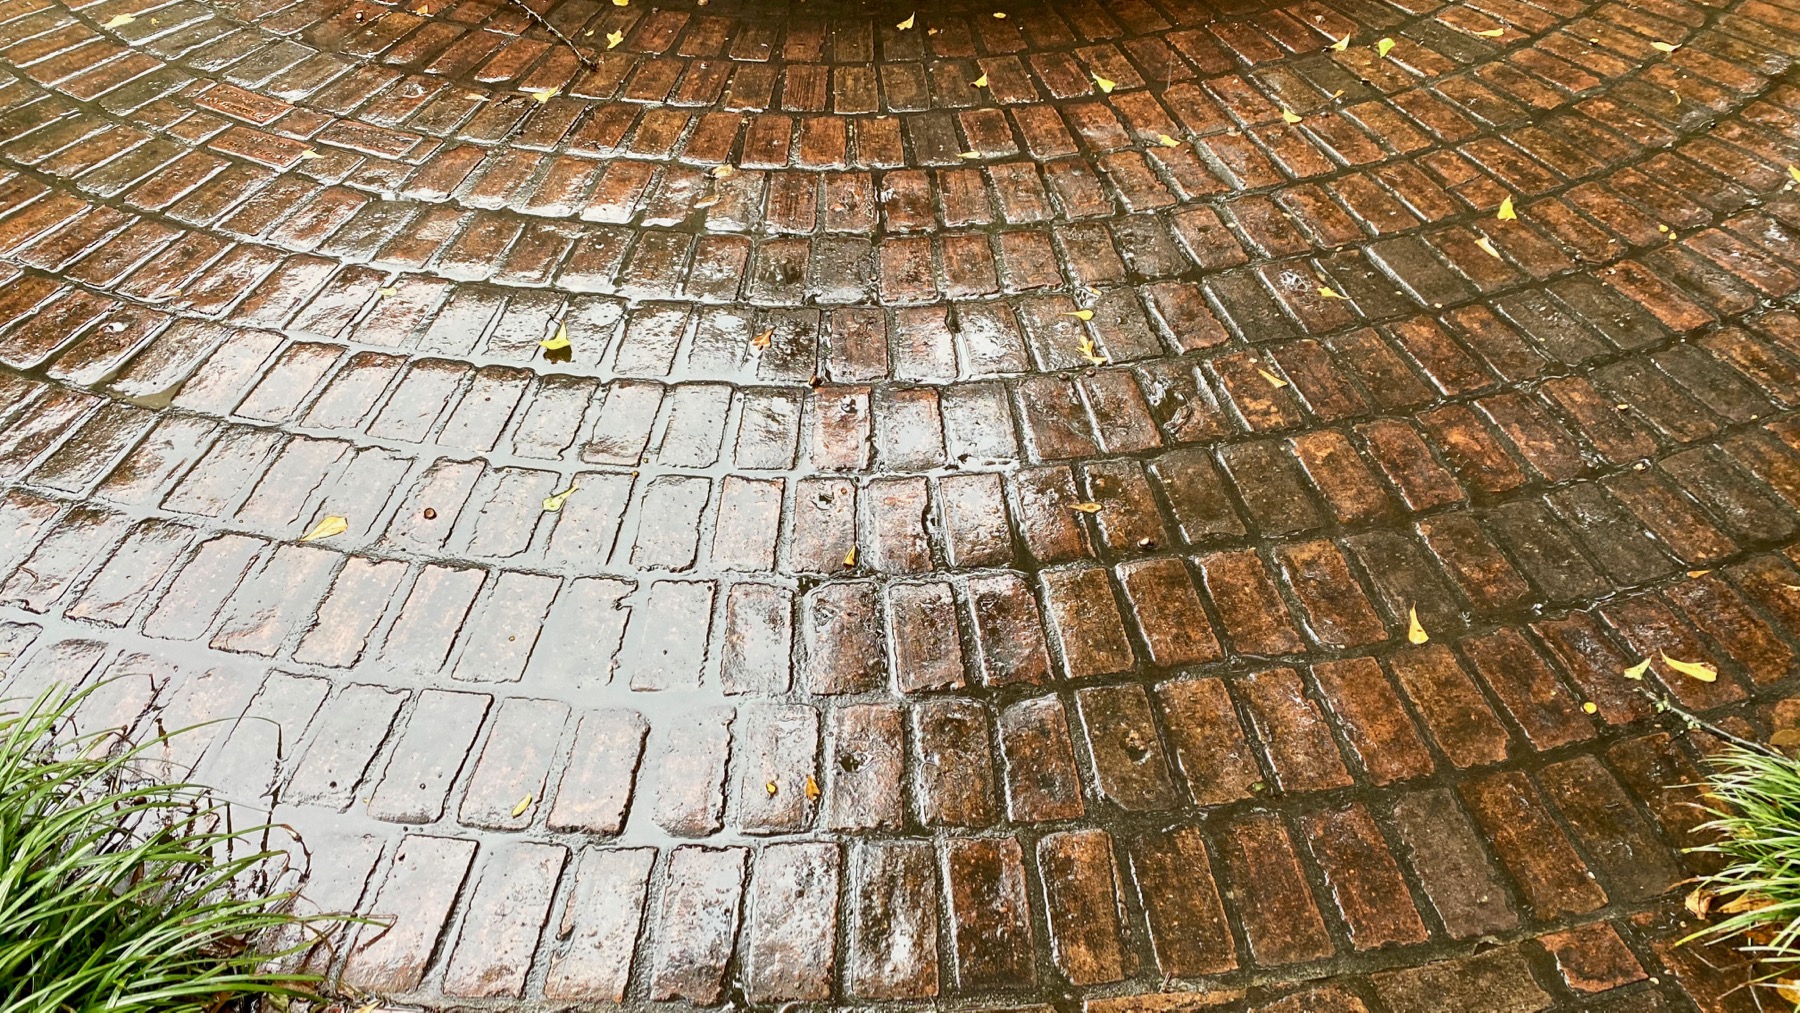 Wet brickwork